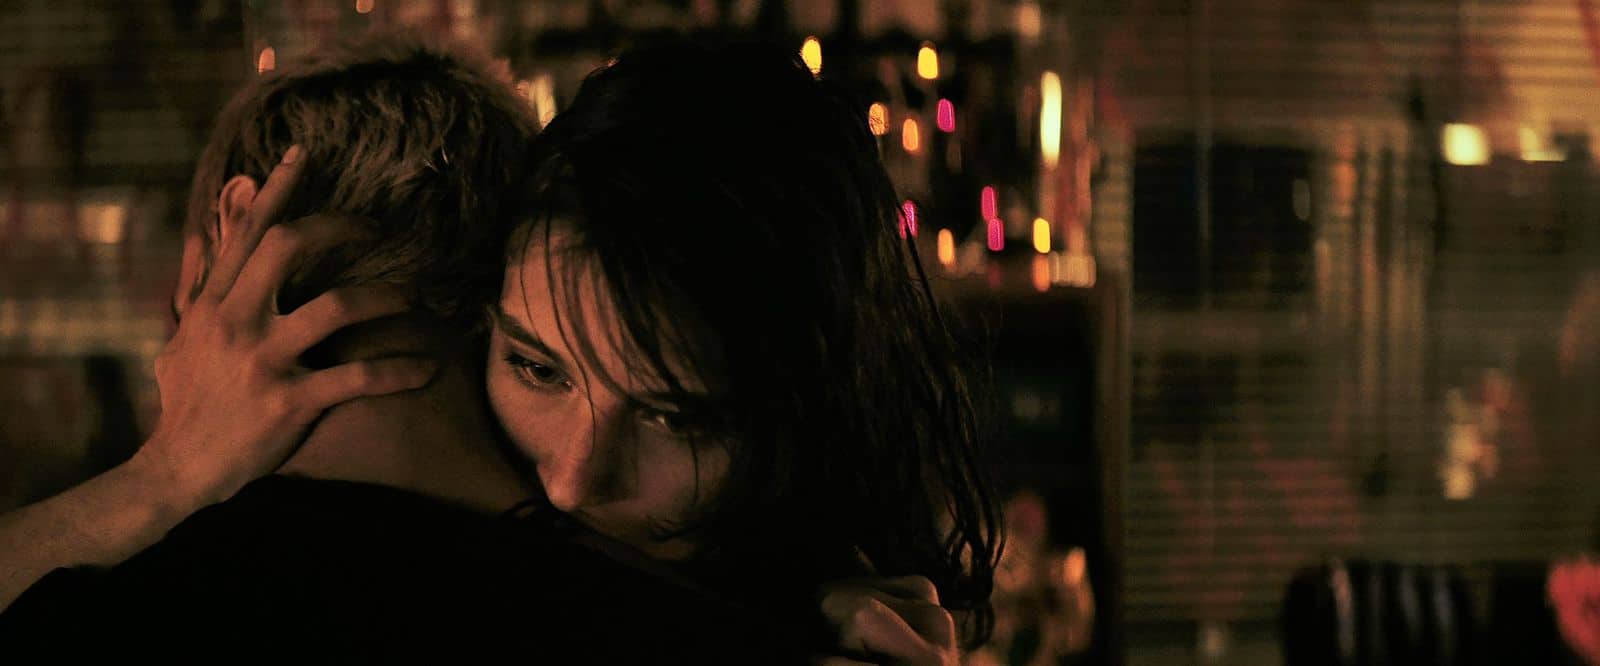 Non mi uccidere: romanticismo gotico e coming-of-age al chiaro di luna nel secondo film di Andrea De Sica